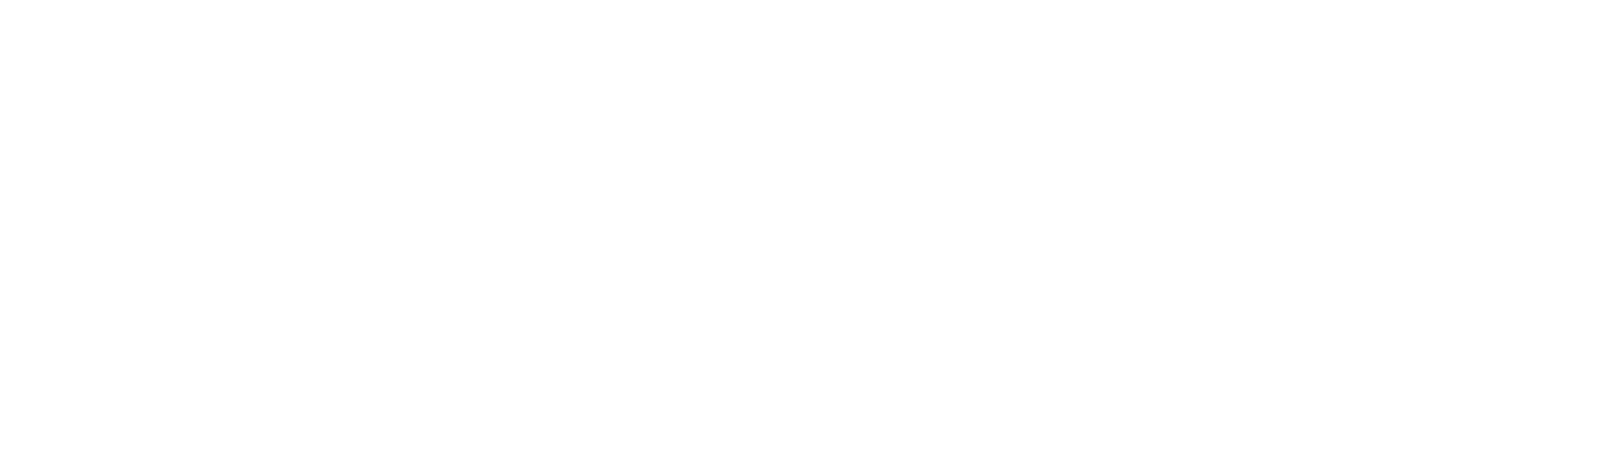 SeGeTIC - Diseño web, posicionamiento, ecommerce